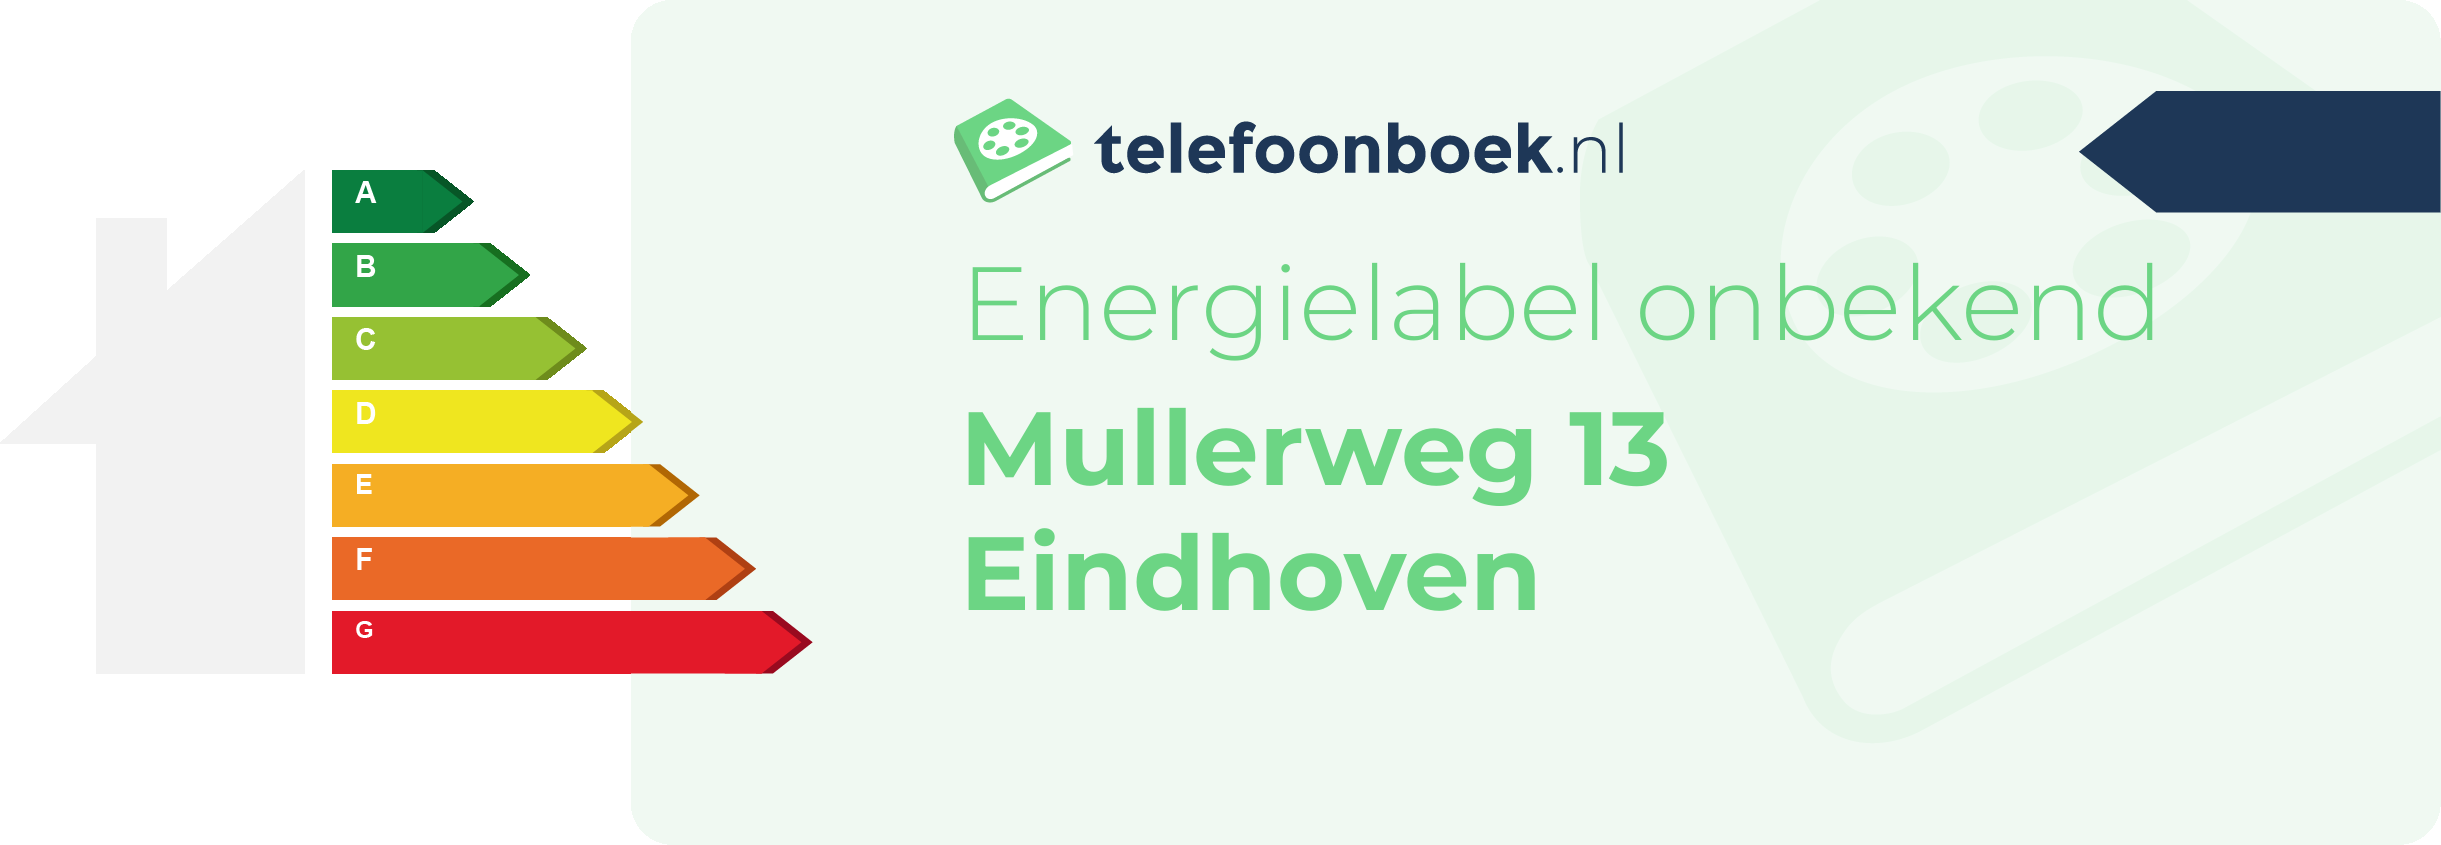 Energielabel Mullerweg 13 Eindhoven